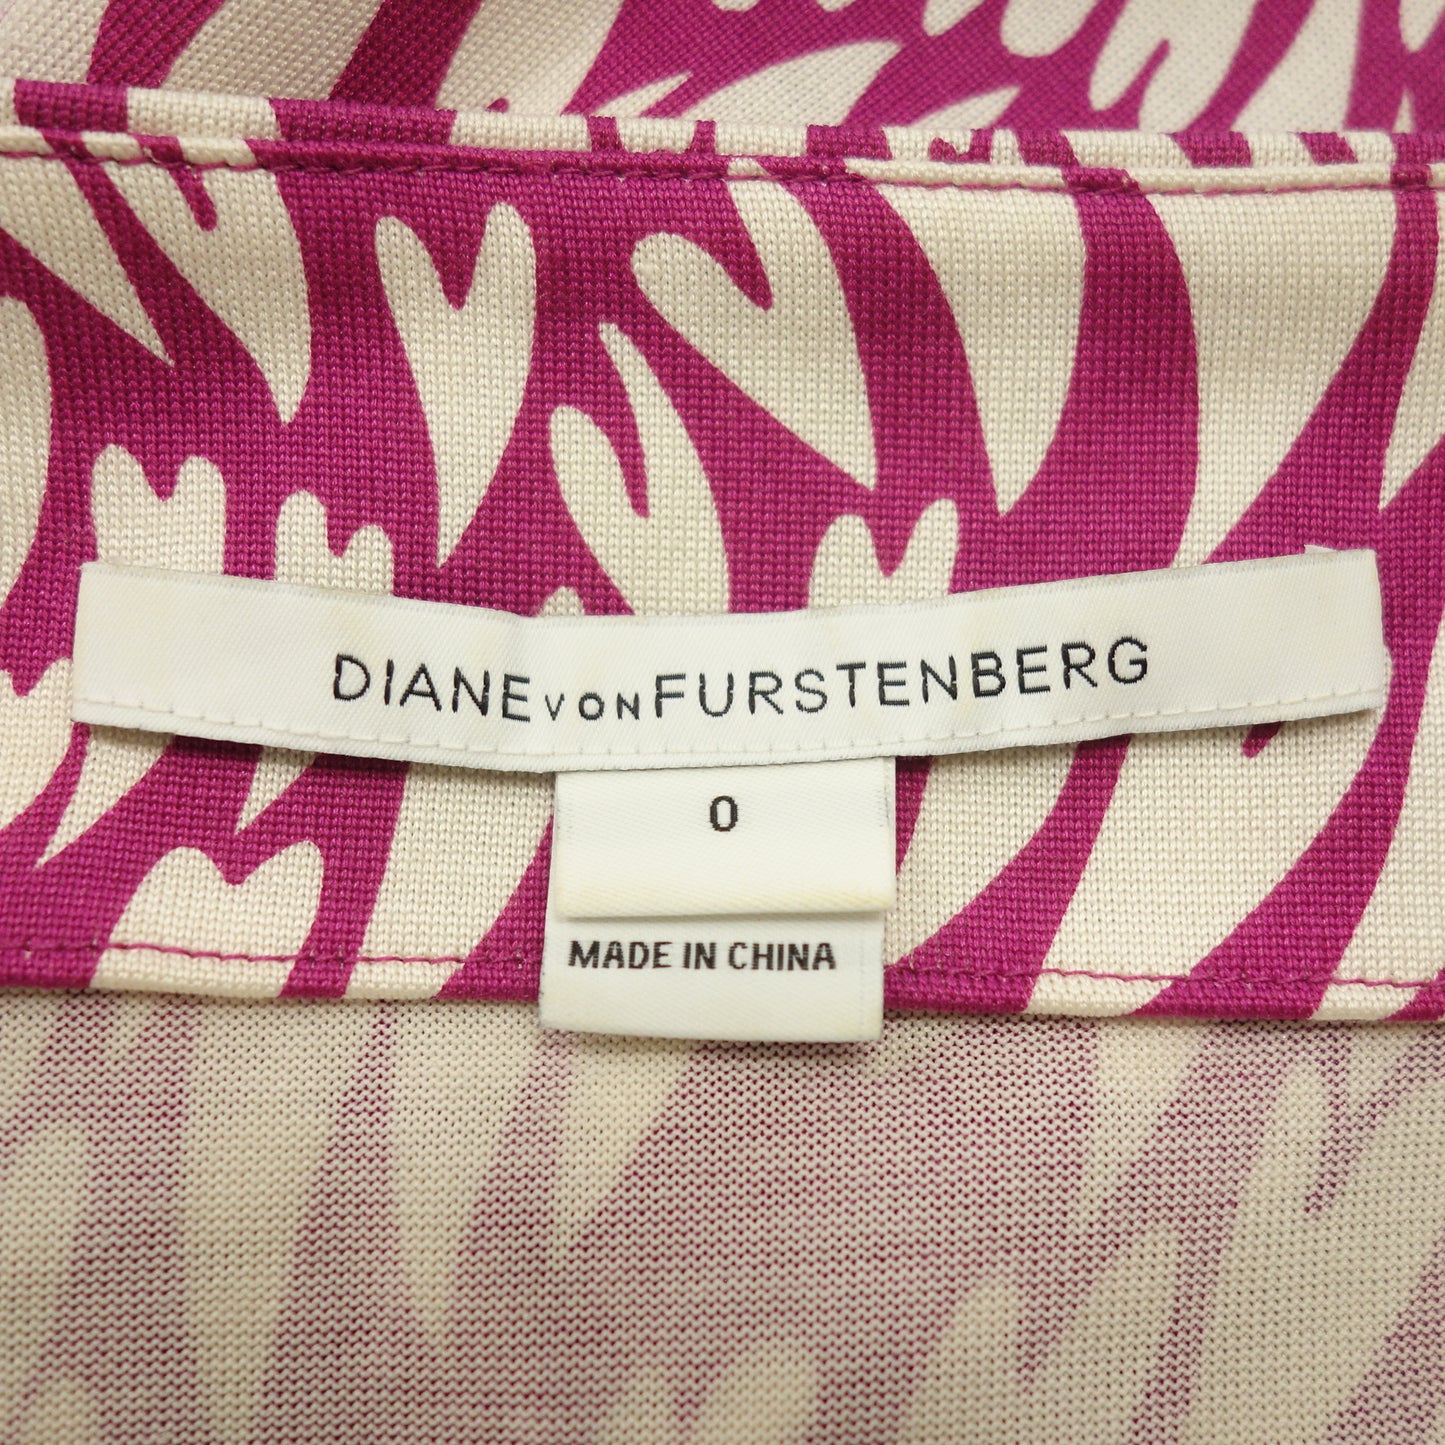 品相良好◆黛安·冯芙丝汀宝 (Diane Von Furstenberg) 连衣裙真丝全身图案粉色 0 号女式 DIANE VON FURSTENBERG [AFB8] 